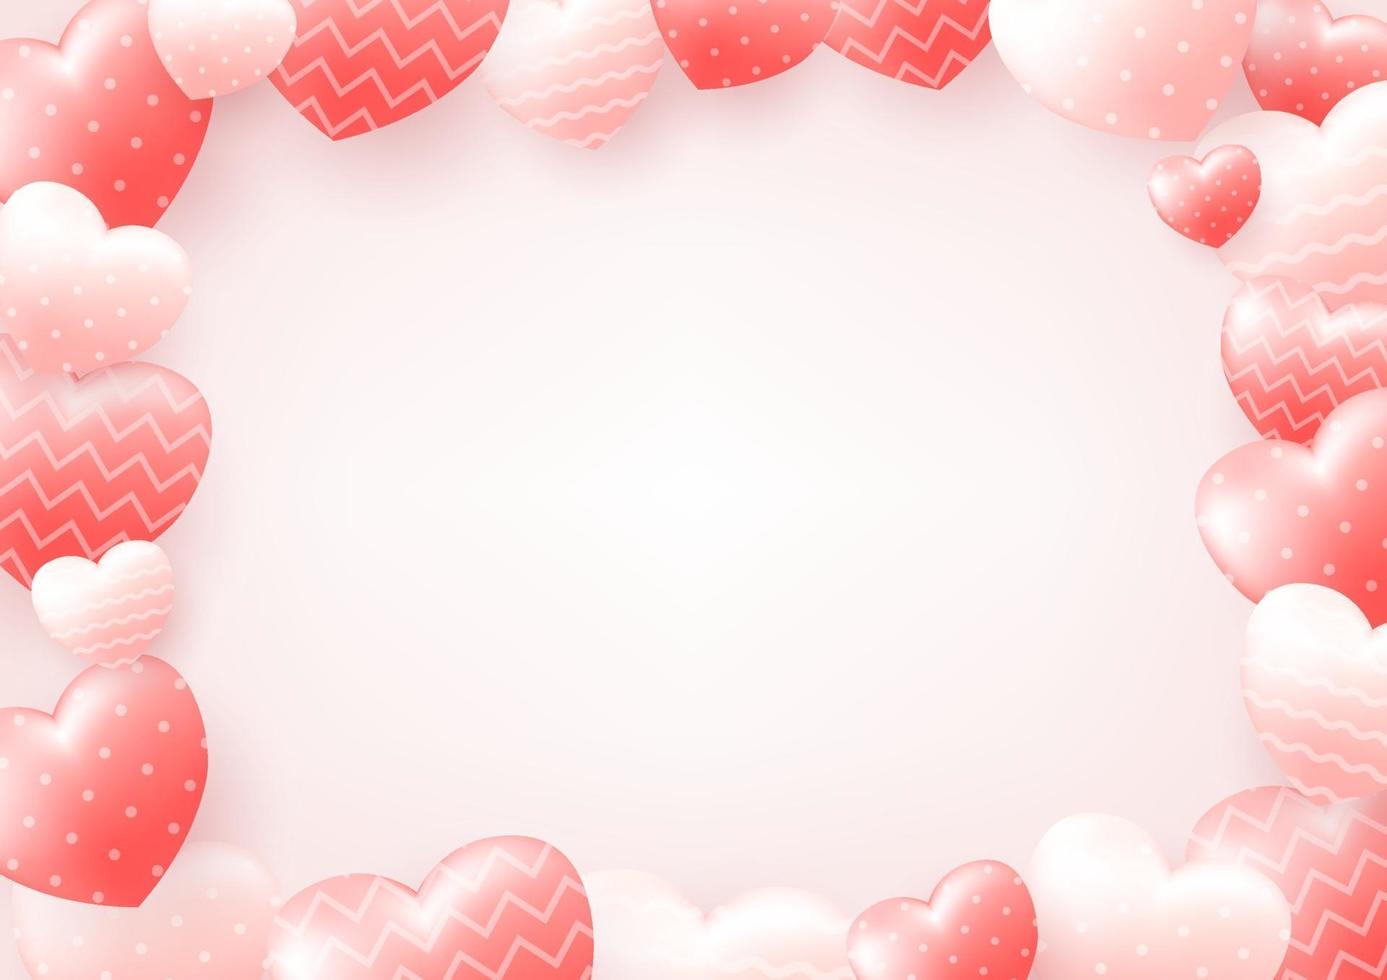 fond de Saint Valentin heureux avec coeur et composition réelle pour bannière de mode, affiche ou carte de voeux. vecteur